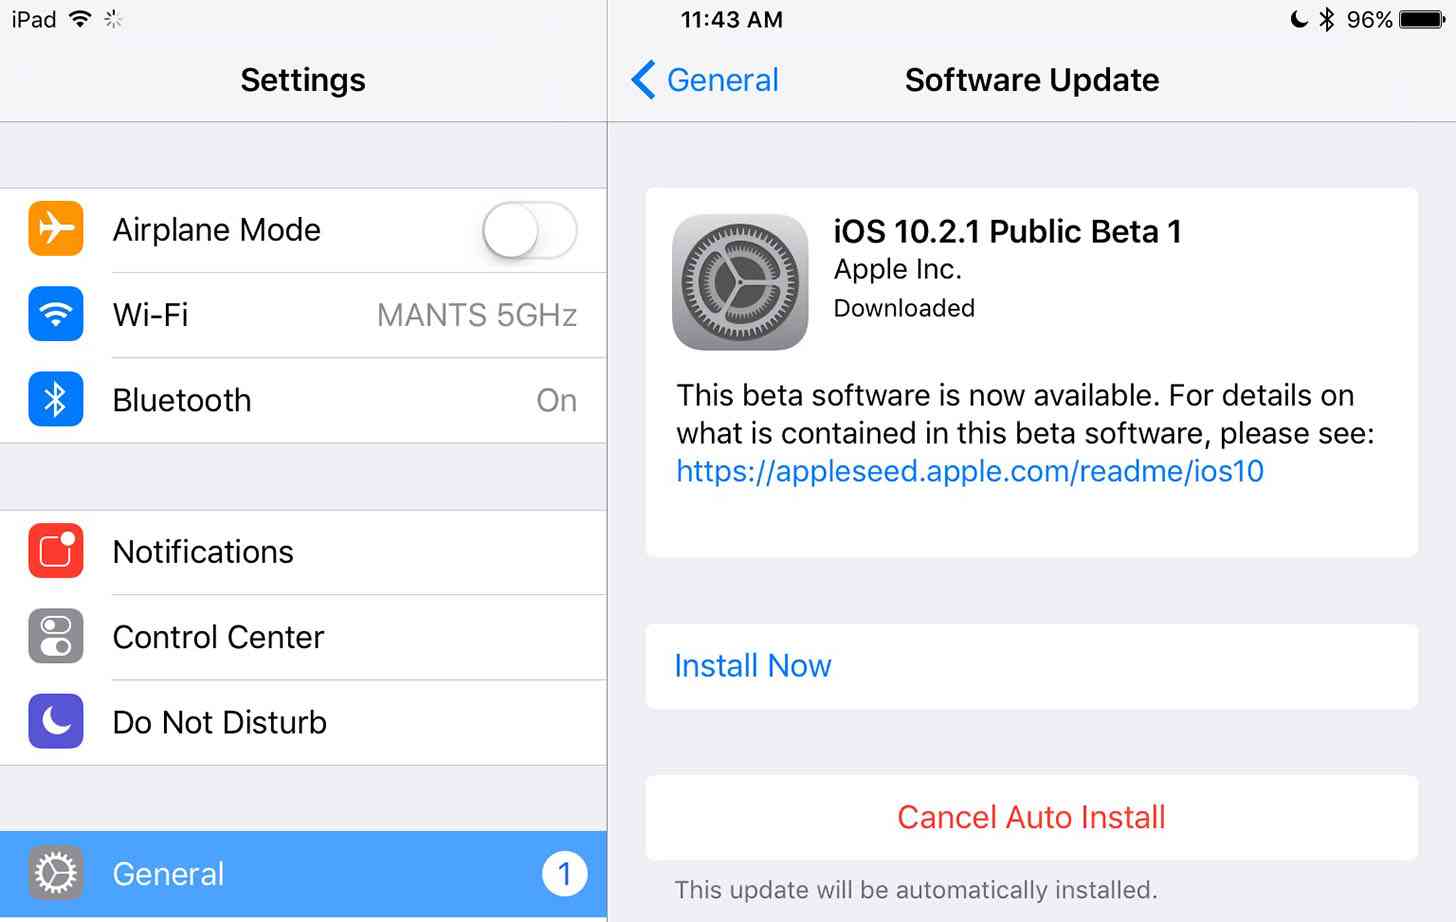 iOS 10.2.1 Public Beta 1 update